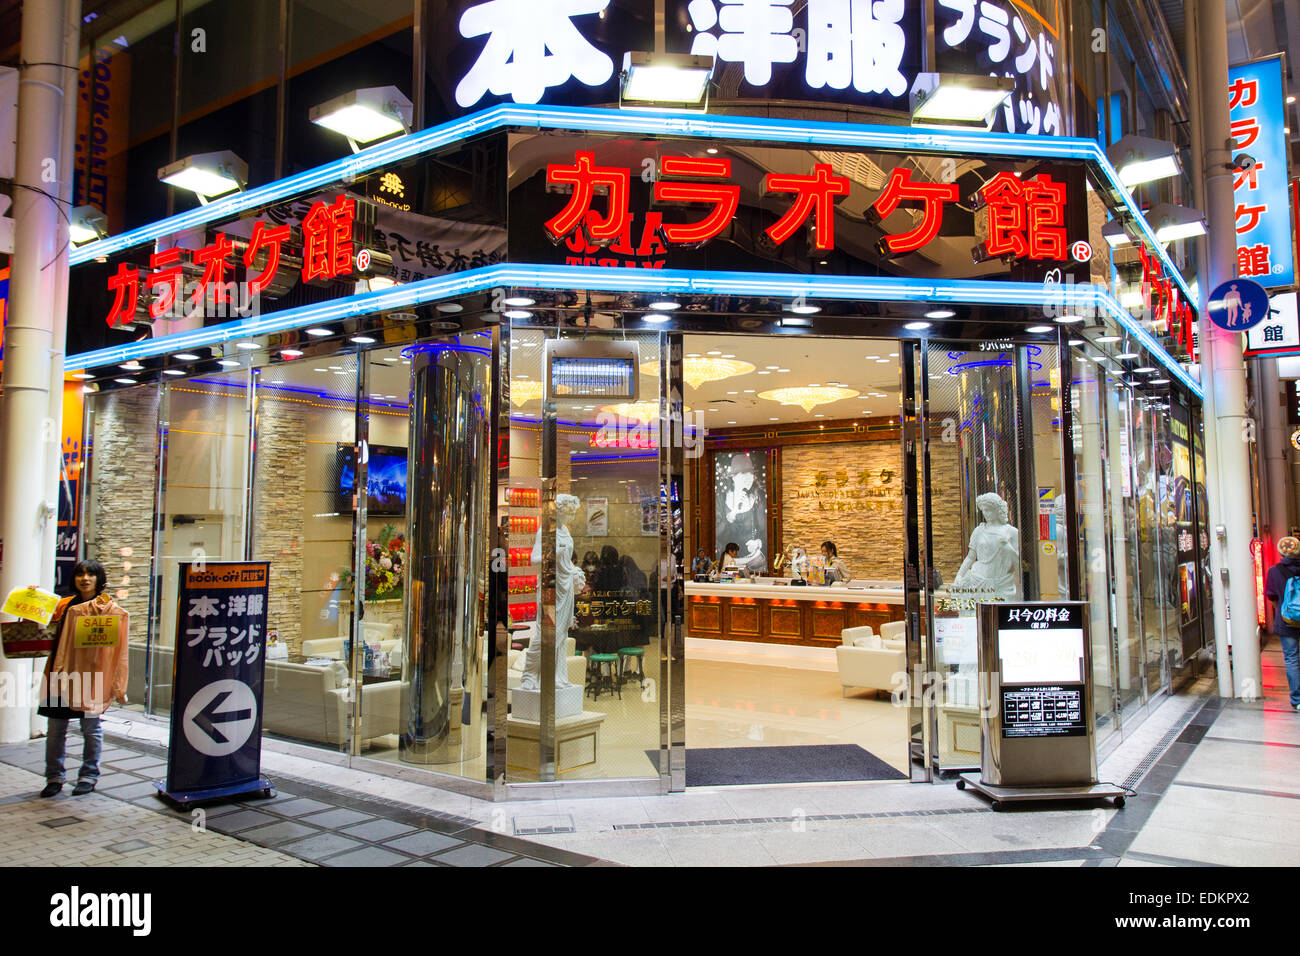 La esquina de cristal de la tienda de Karaoke, Karaoke Ken en la galería comercial de Dotonbori en Osaka, Japón. Vista desde fuera mirando hacia adentro. Noche. Foto de stock